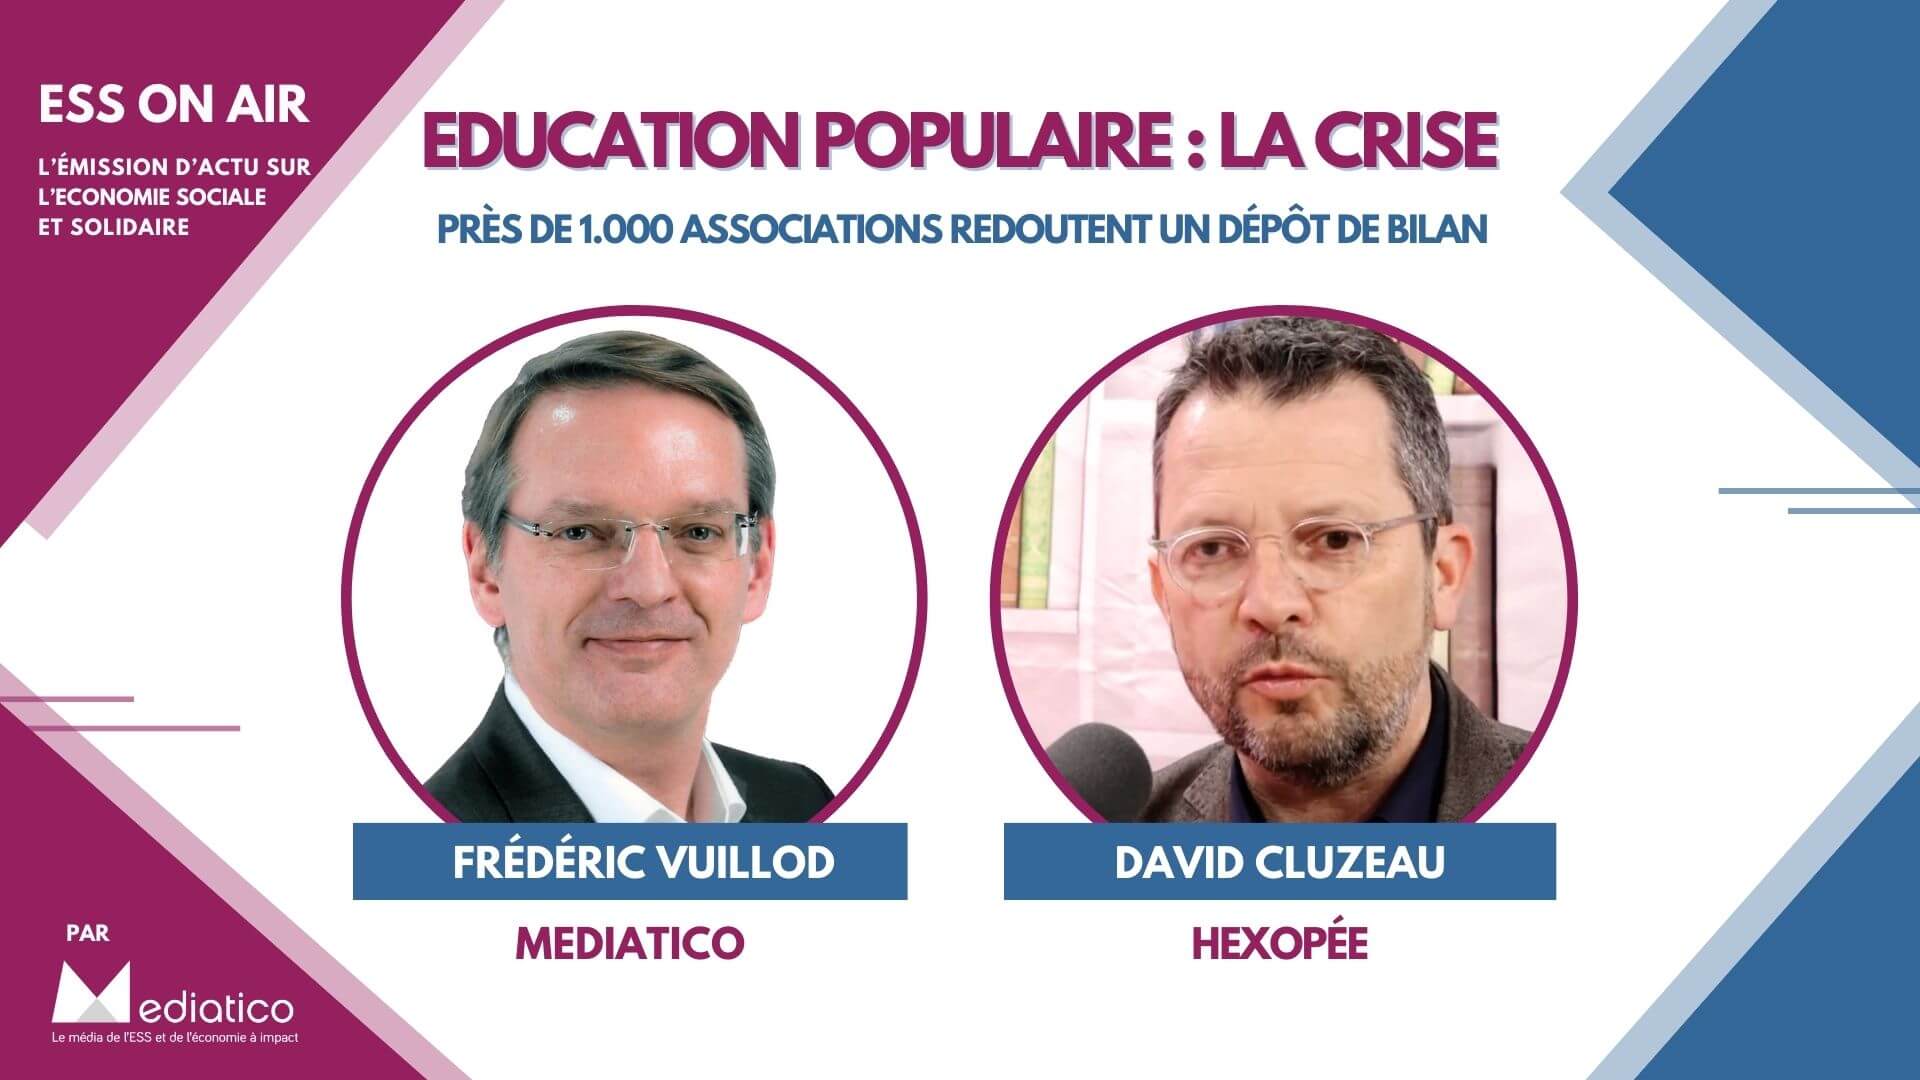 David Cluzeau : « 1.000 associations d’éducation populaire redoutent un dépôt de bilan » 